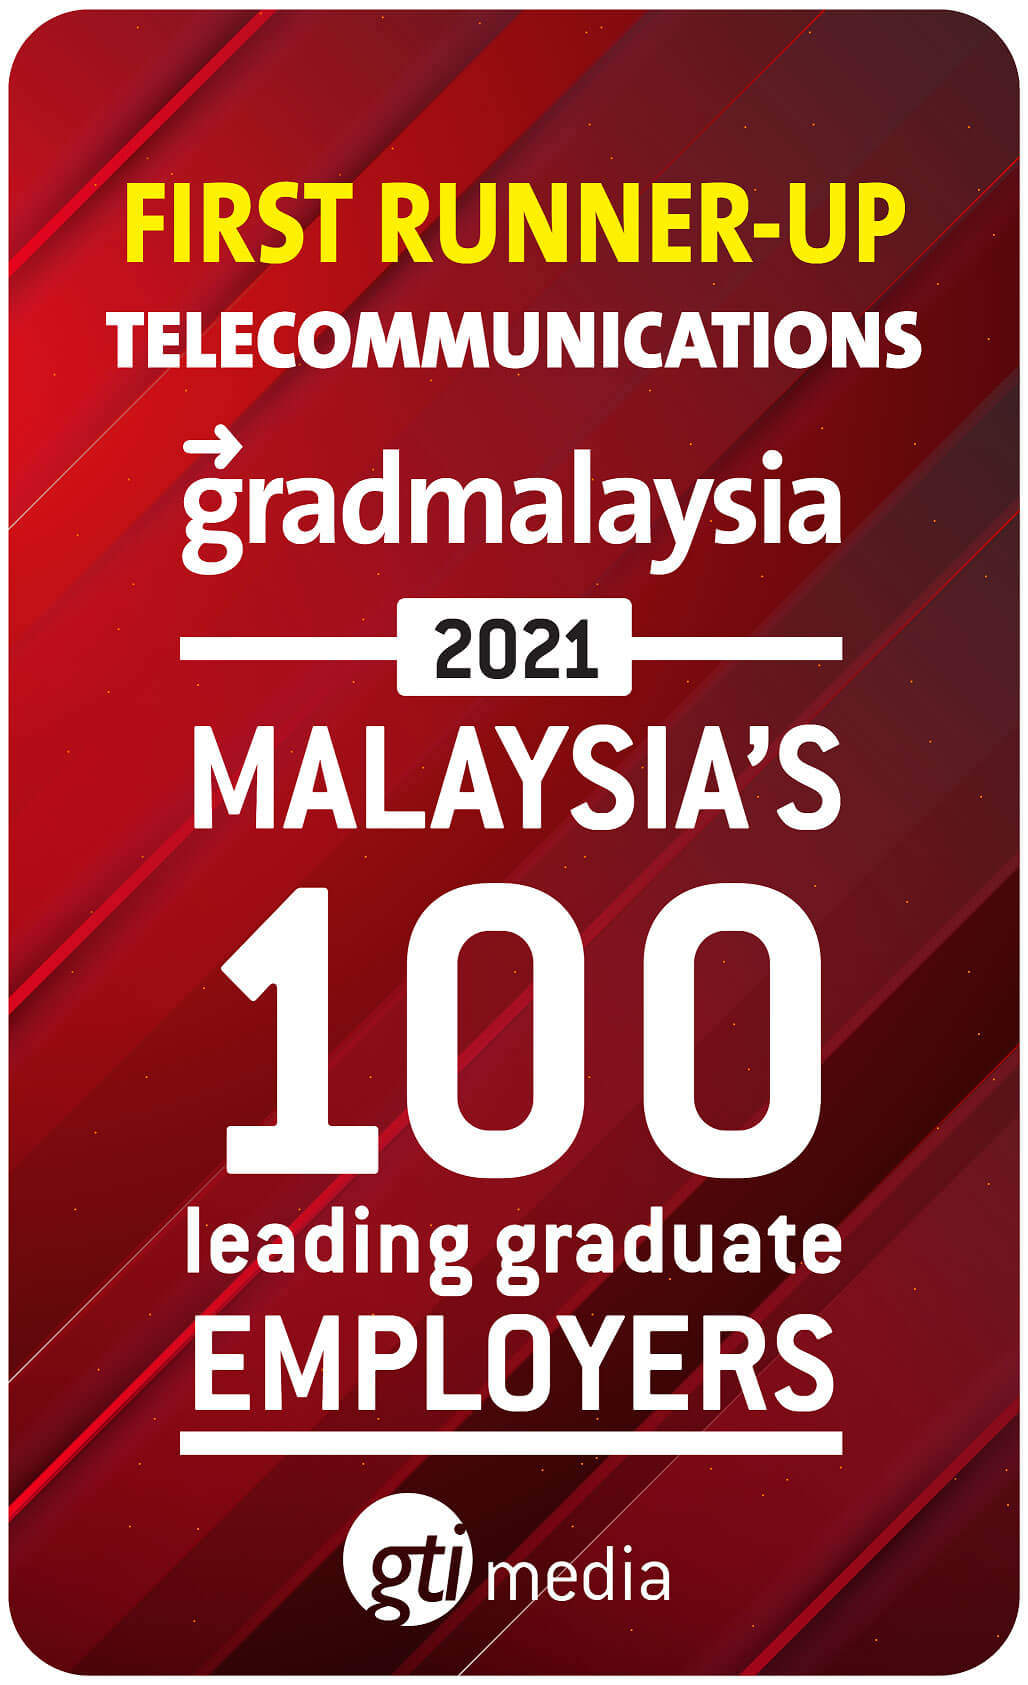 First Runner-Up Telecommunications Graduates Choice Award 2021